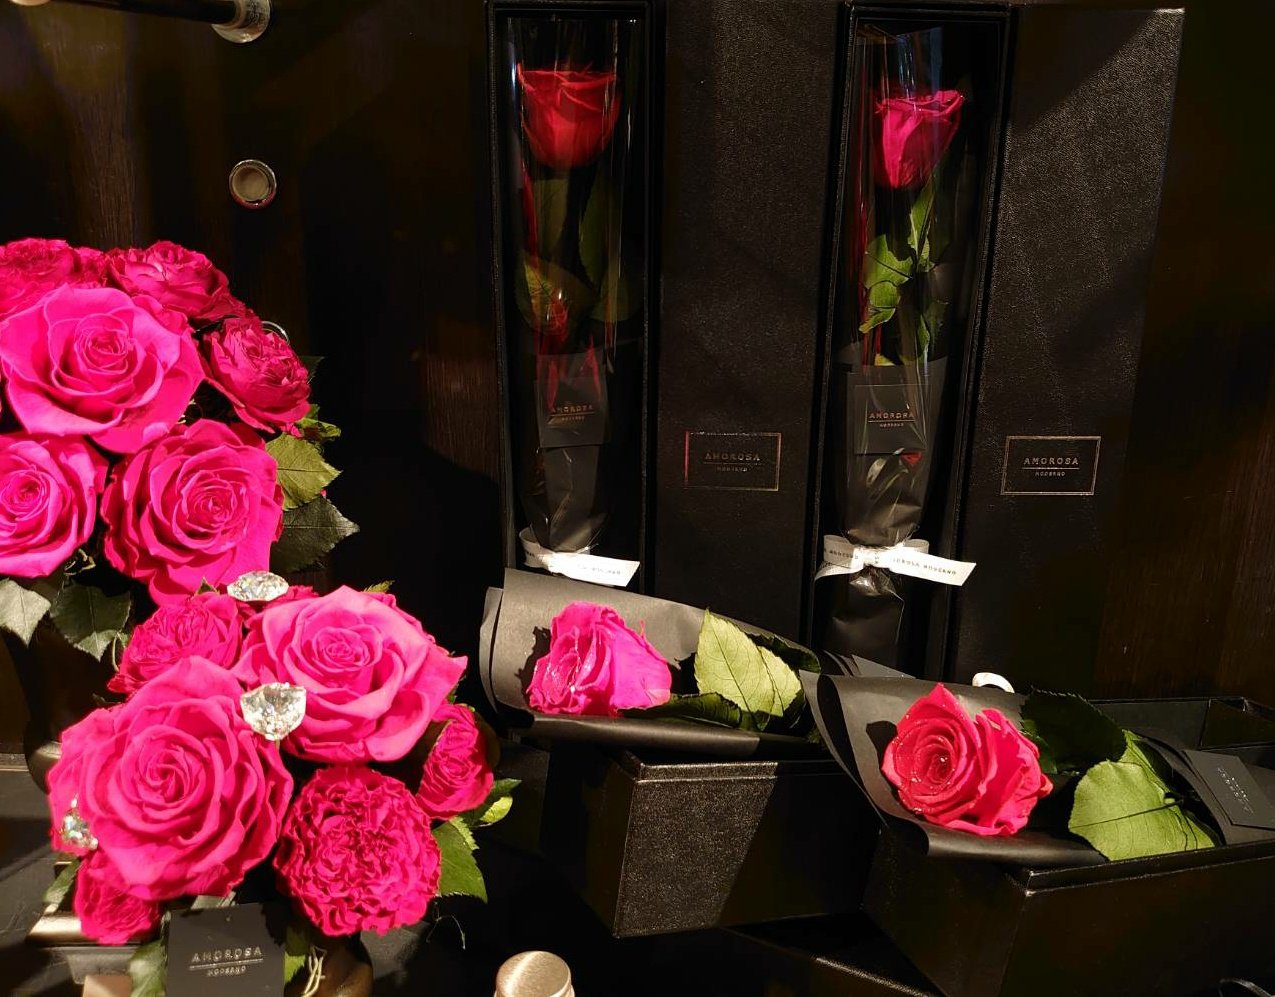 تويتر Flower Shop Phoenix على تويتر With Roseのフェア期間中は ツイッター インスタグラムを 薔薇で埋め尽くします プリザーブドフラワーも バラそのものの美しさが 際立つデザインのものを 多くご用意しております Phoenix 梅田の花屋 薔薇 Rose